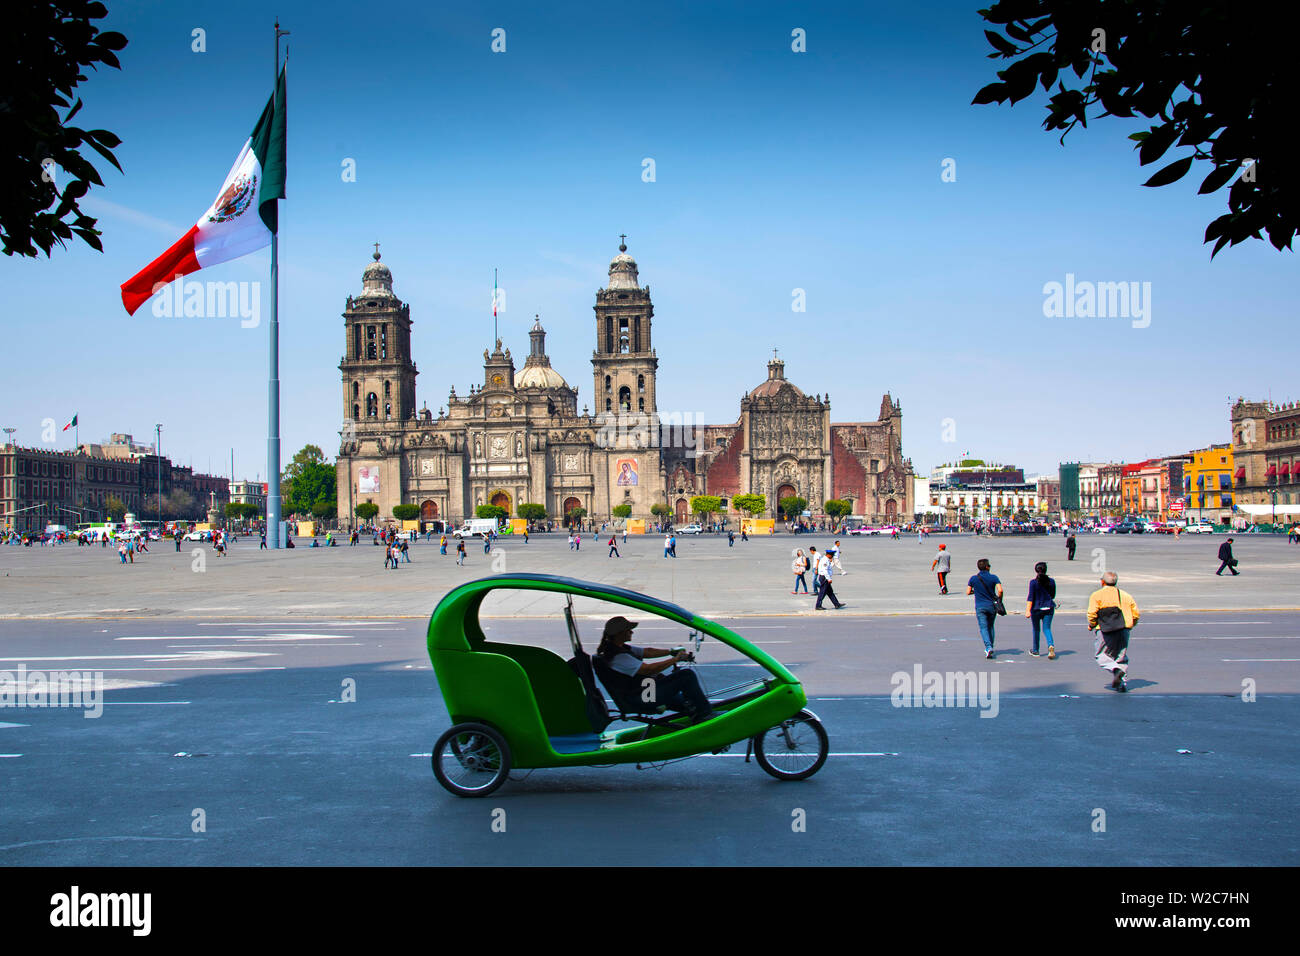 Mexico, Mexico City, Metropolitan Cathedral, Zocalo, Main Plaza, Pedal Taxi, Centro Historico Stock Photo